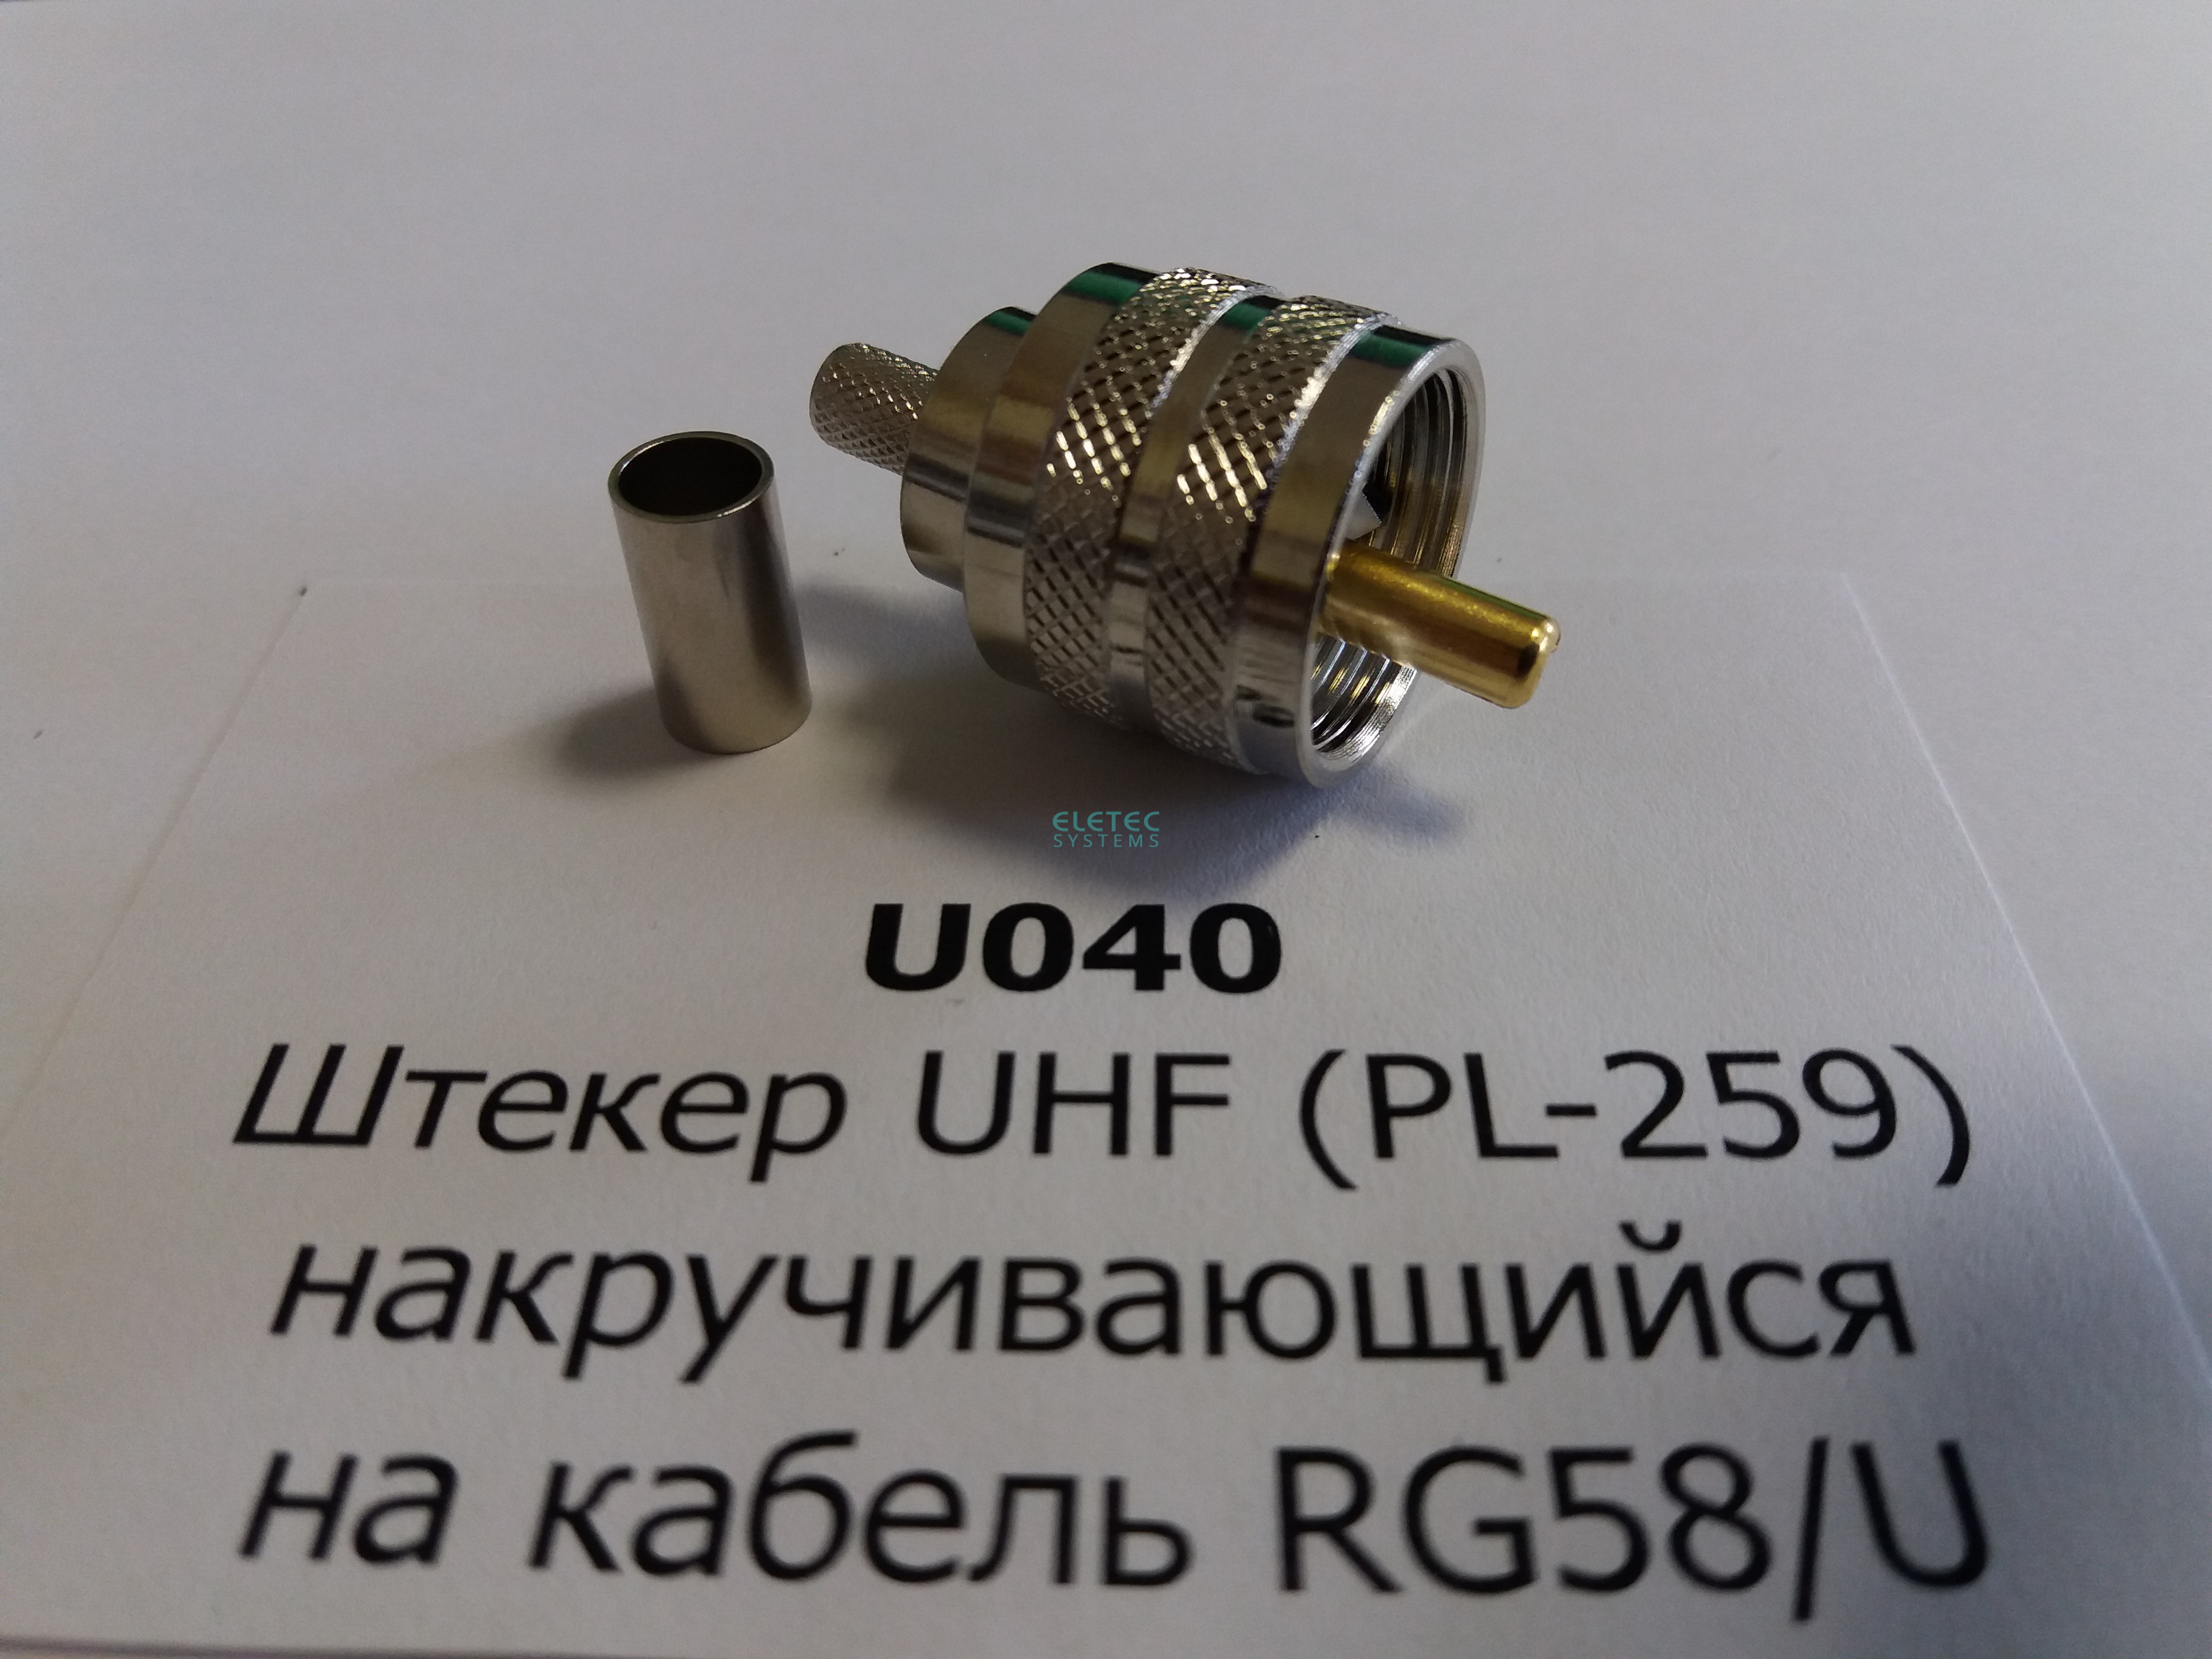 Штекер UHF (PL-259) обжим на кабель RG58/U (аналог U-111F), индивидуальная упаковка, U040